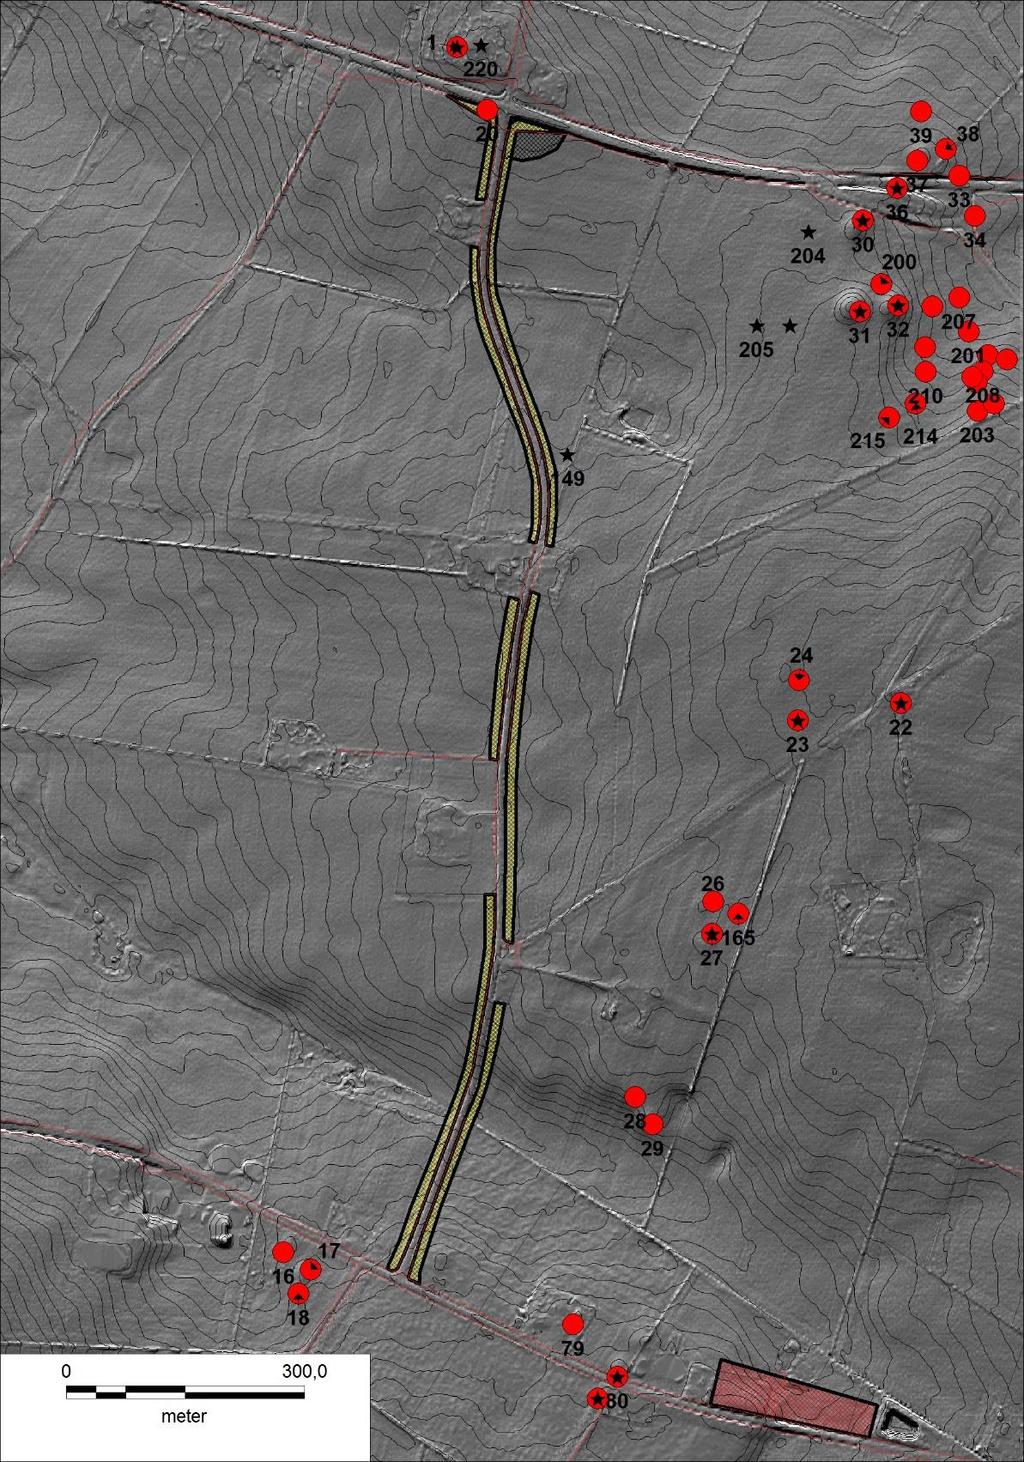 Figur 3: Damgårdvej med udvidelsesarealerne markeret med grønt på reliefkort. De røde tomme cirkler er overpløjede gravhøje, mens de stjerneudfyldte røde cirkler er fredede gravhøje.